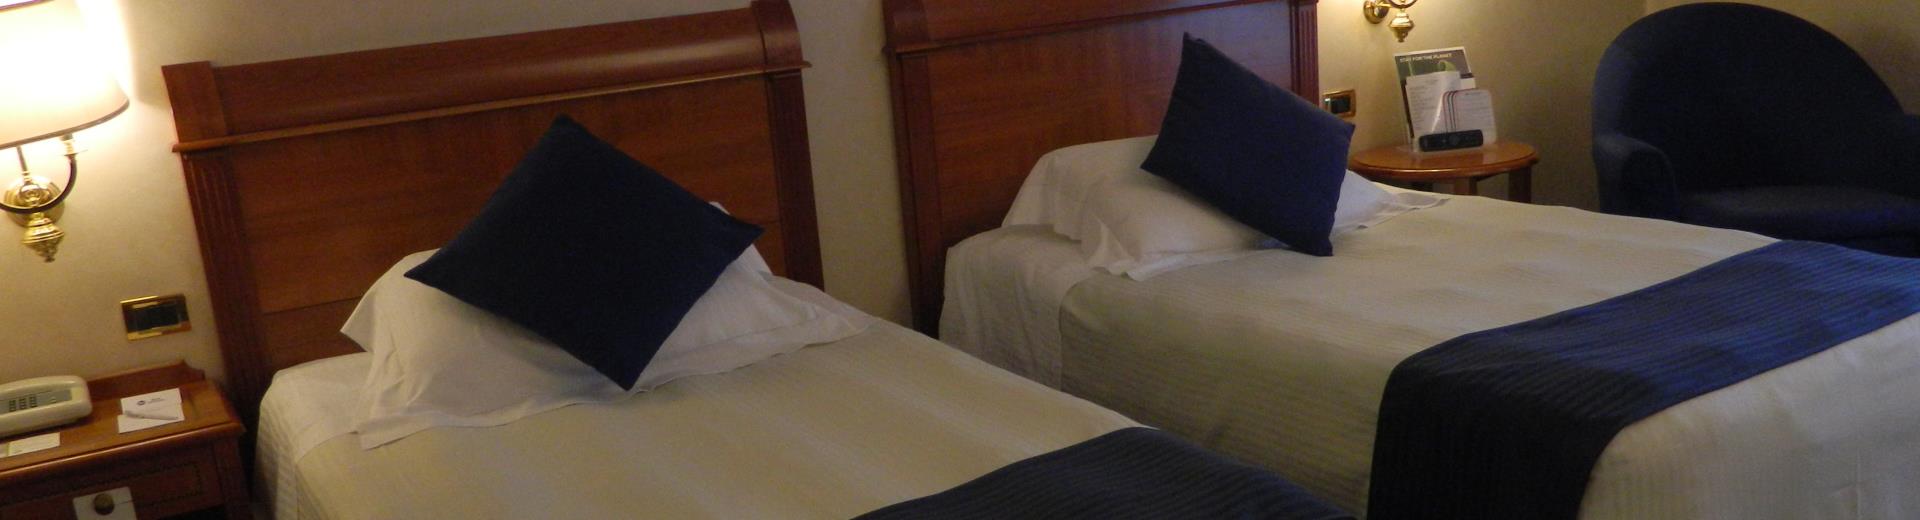 Comfort deluxe rooms of Best Western Hotel Cappello d''Oro Bergamo